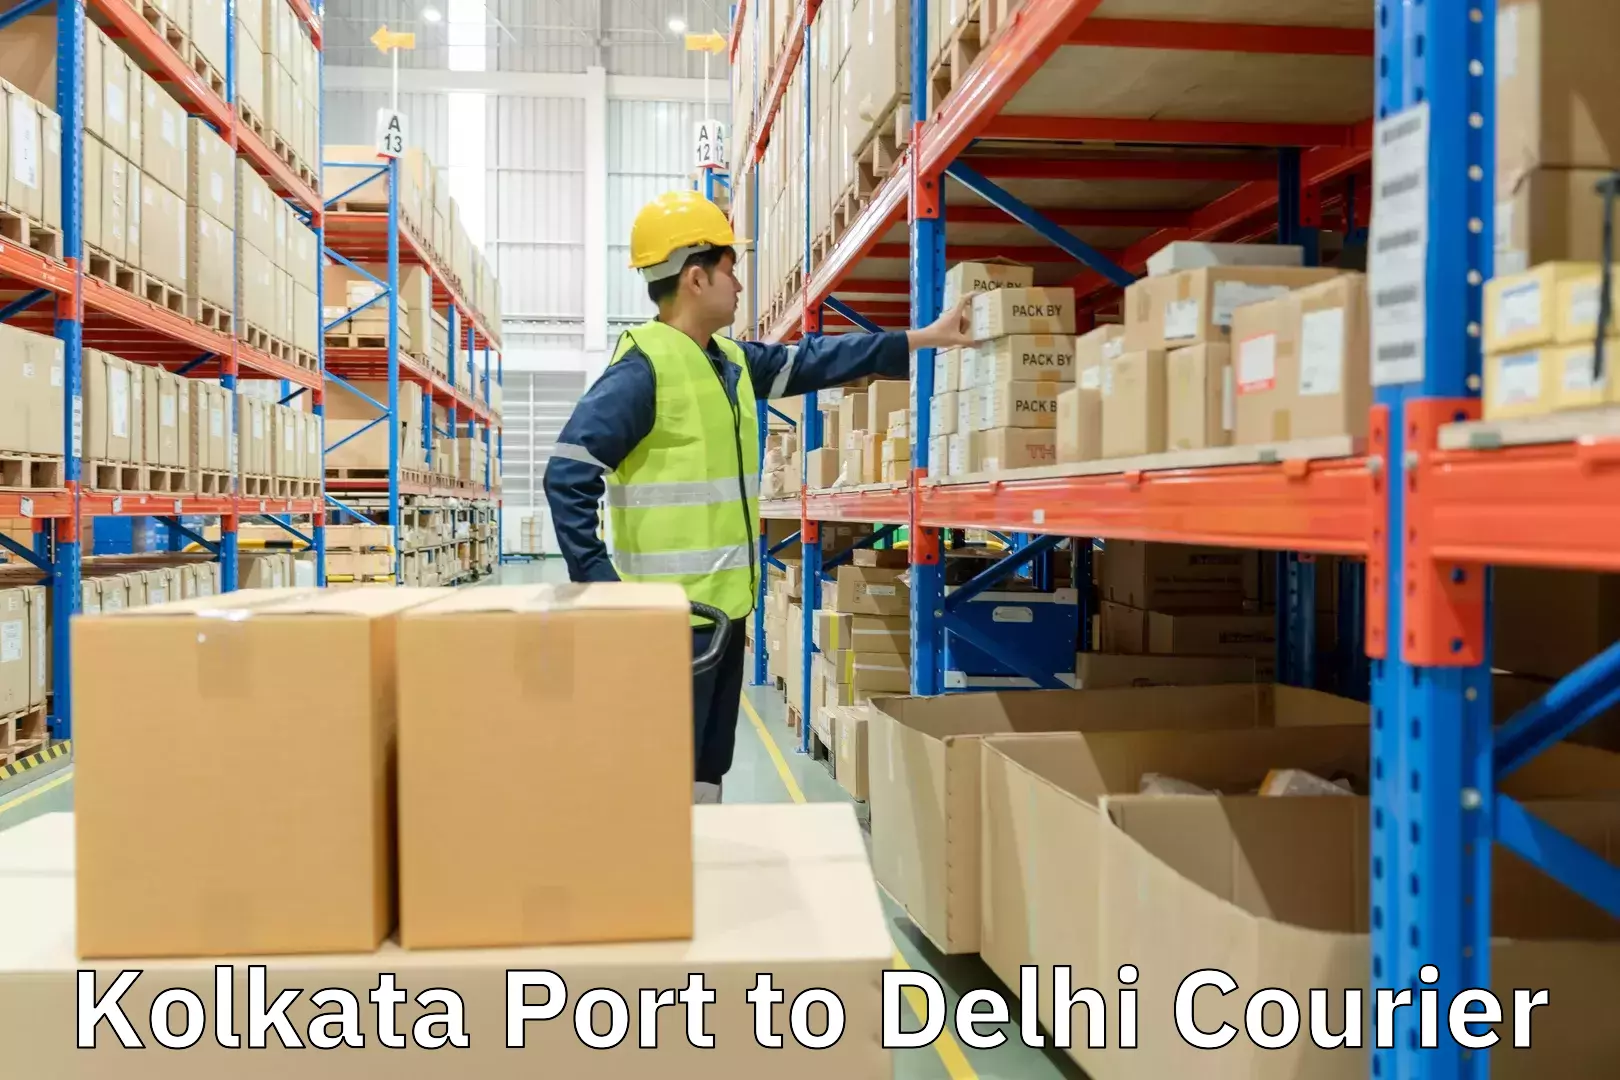 Efficient shipping platforms Kolkata Port to Delhi